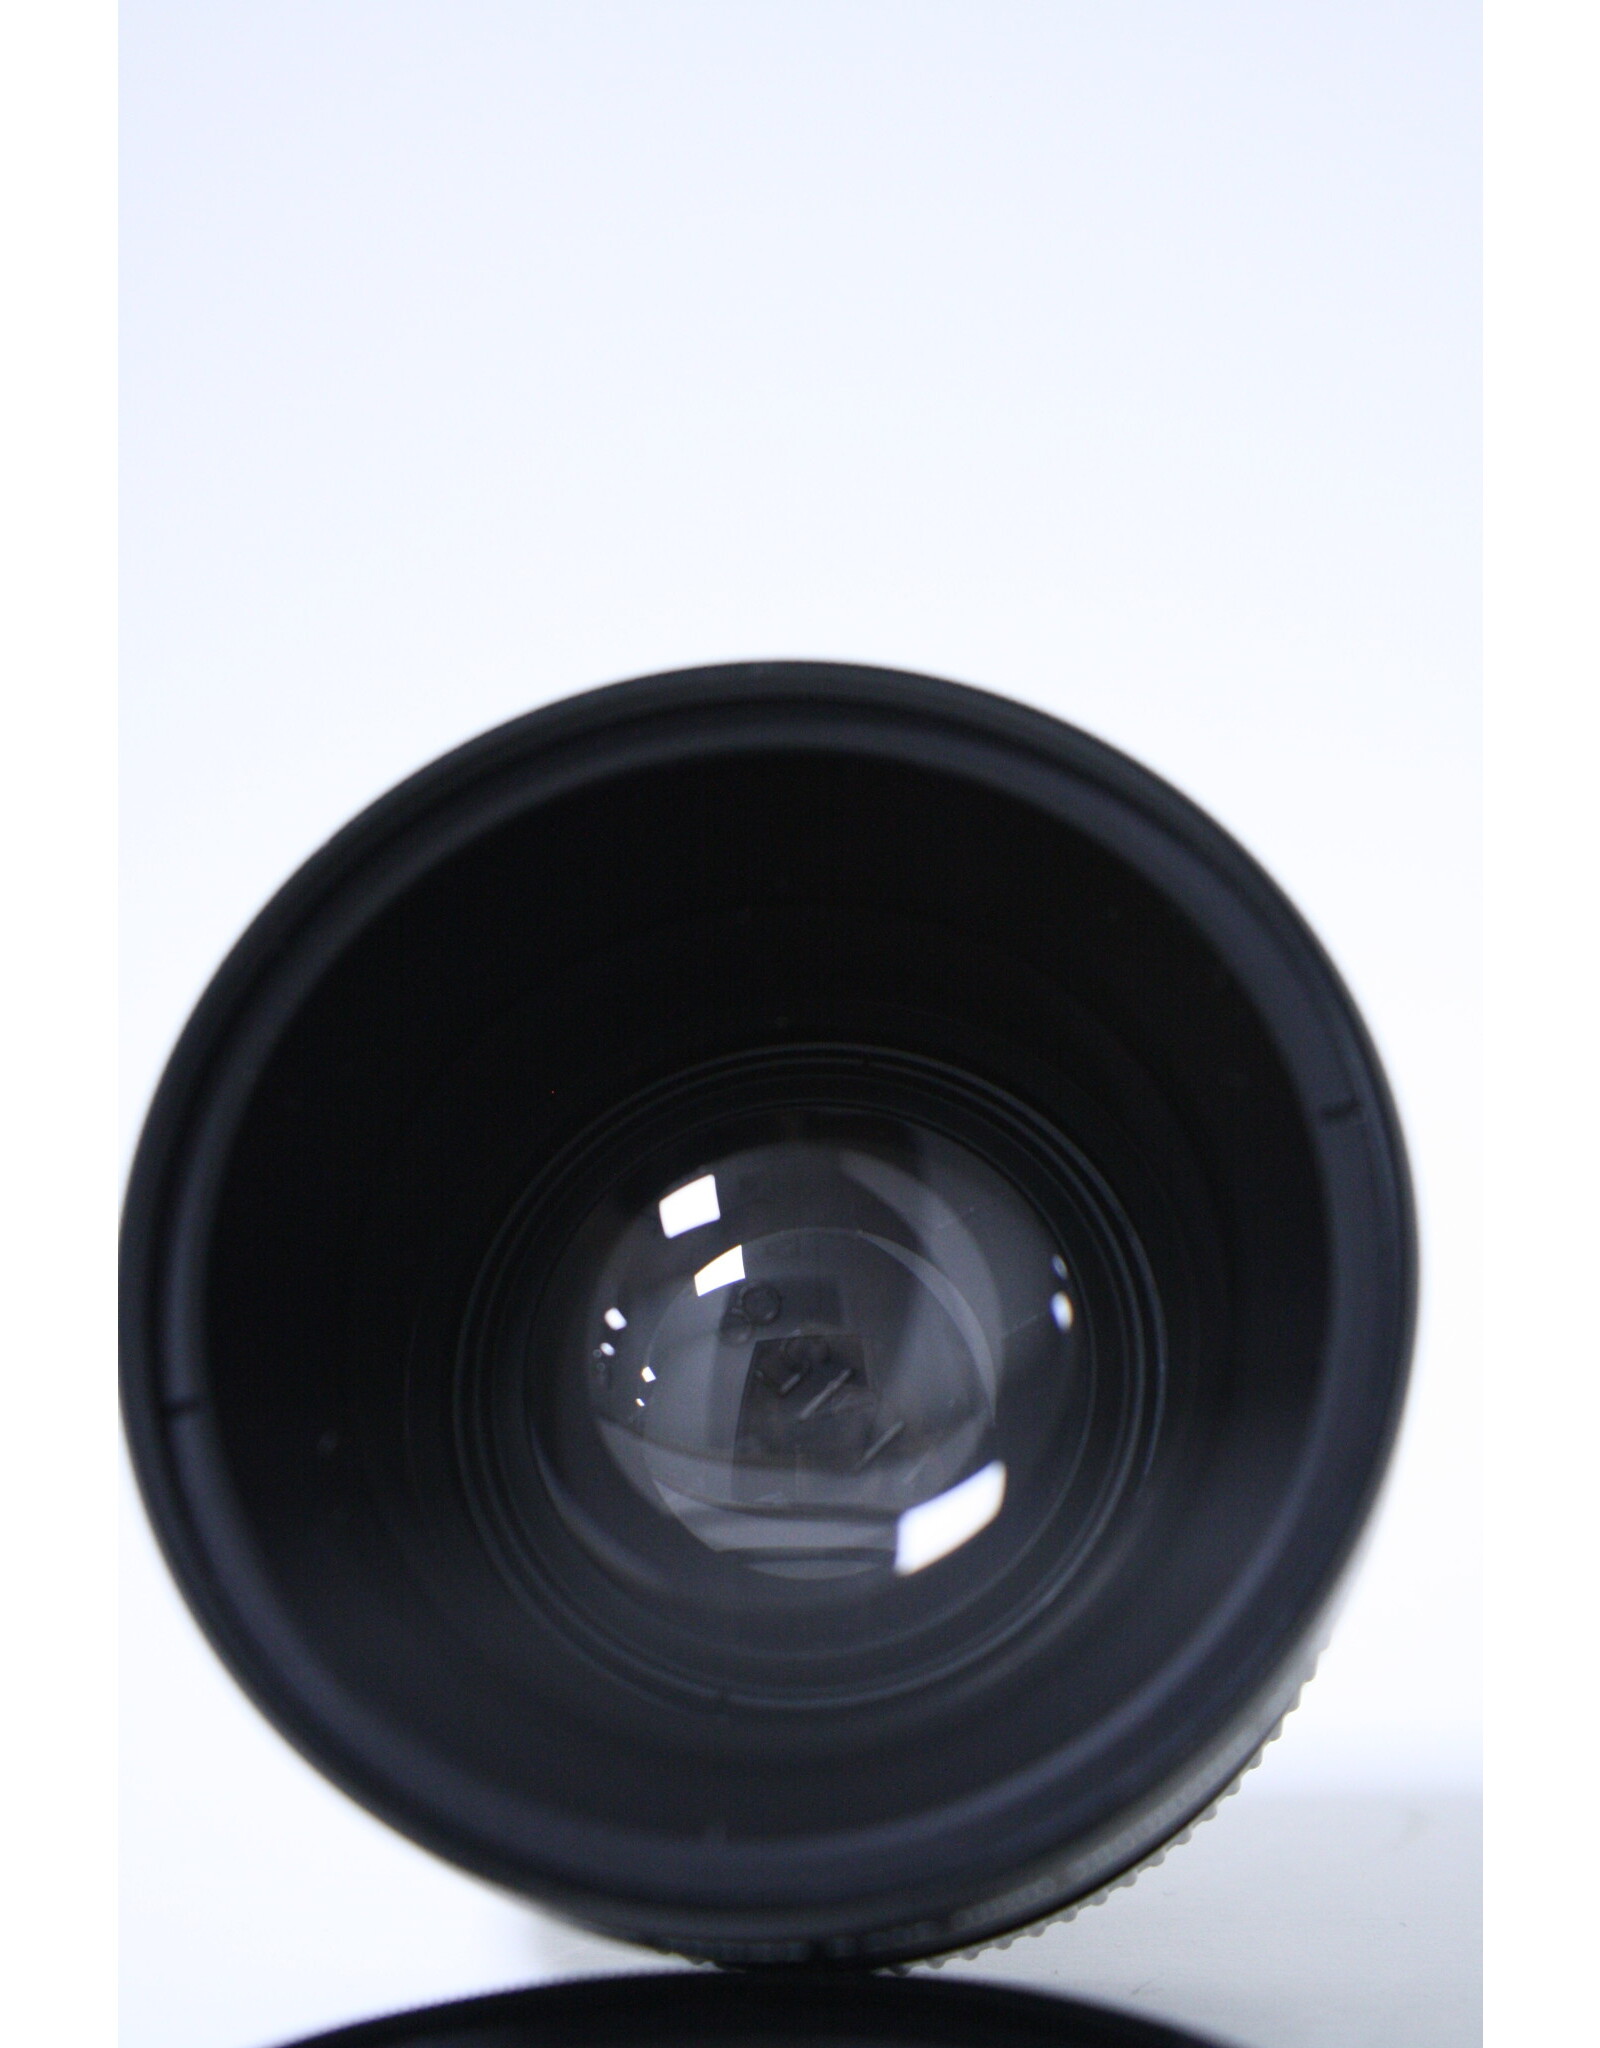 Deco Gear 58mm 2.2x Tele/.43x WA Lens Accessory Kit